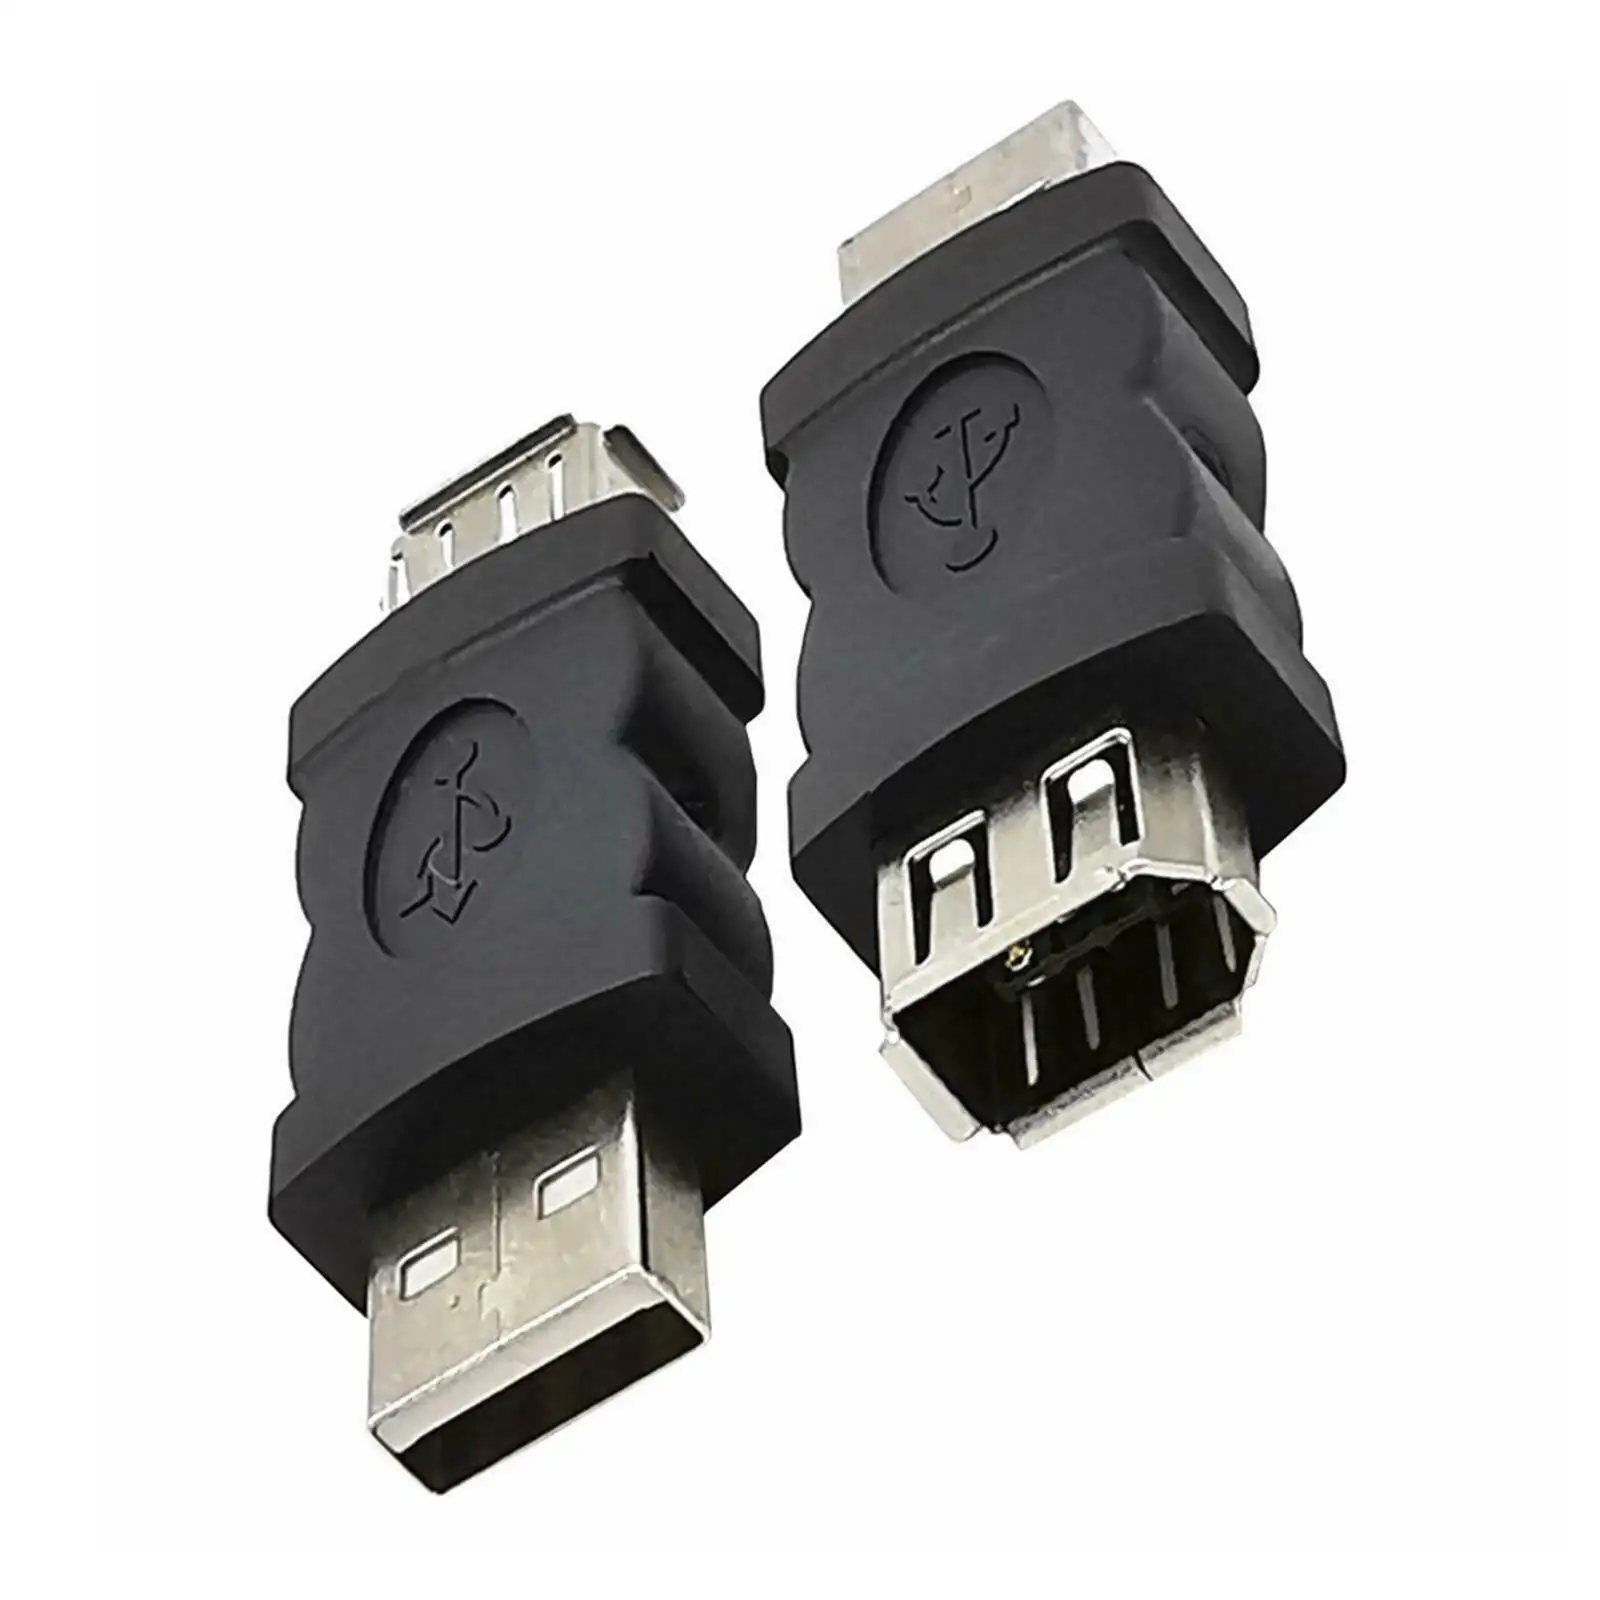 Nuovo convertitore adattatore Firewire IEEE 1394 6 Pin femmina da F a USB M maschio